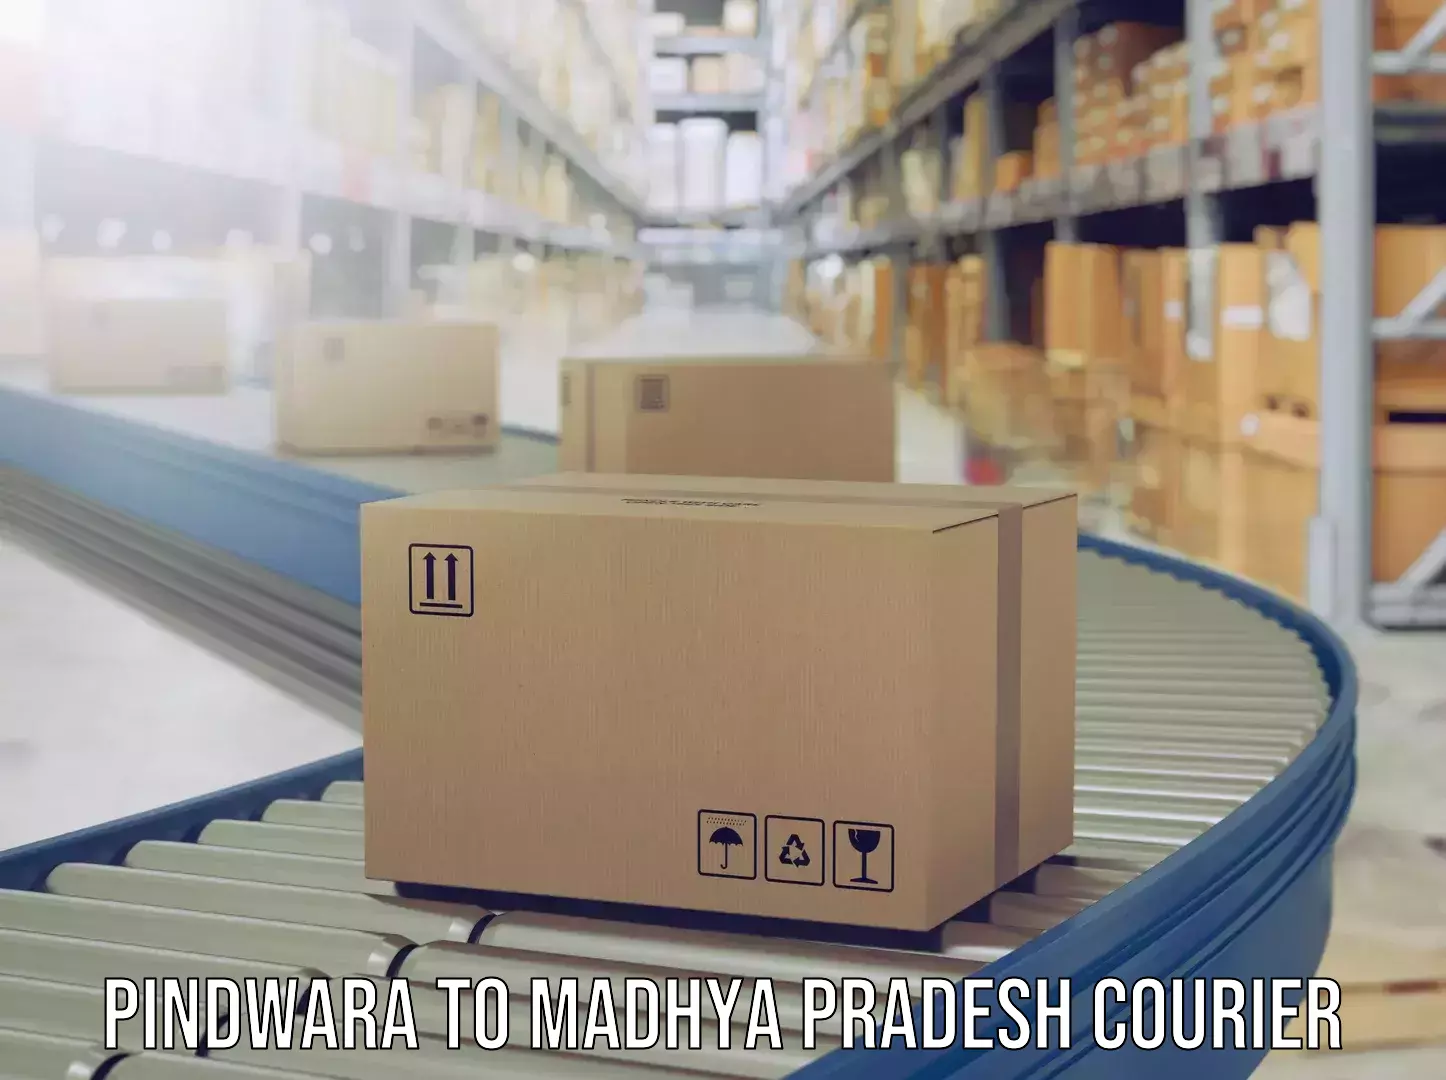 Luggage shipping planner in Pindwara to Pithampur